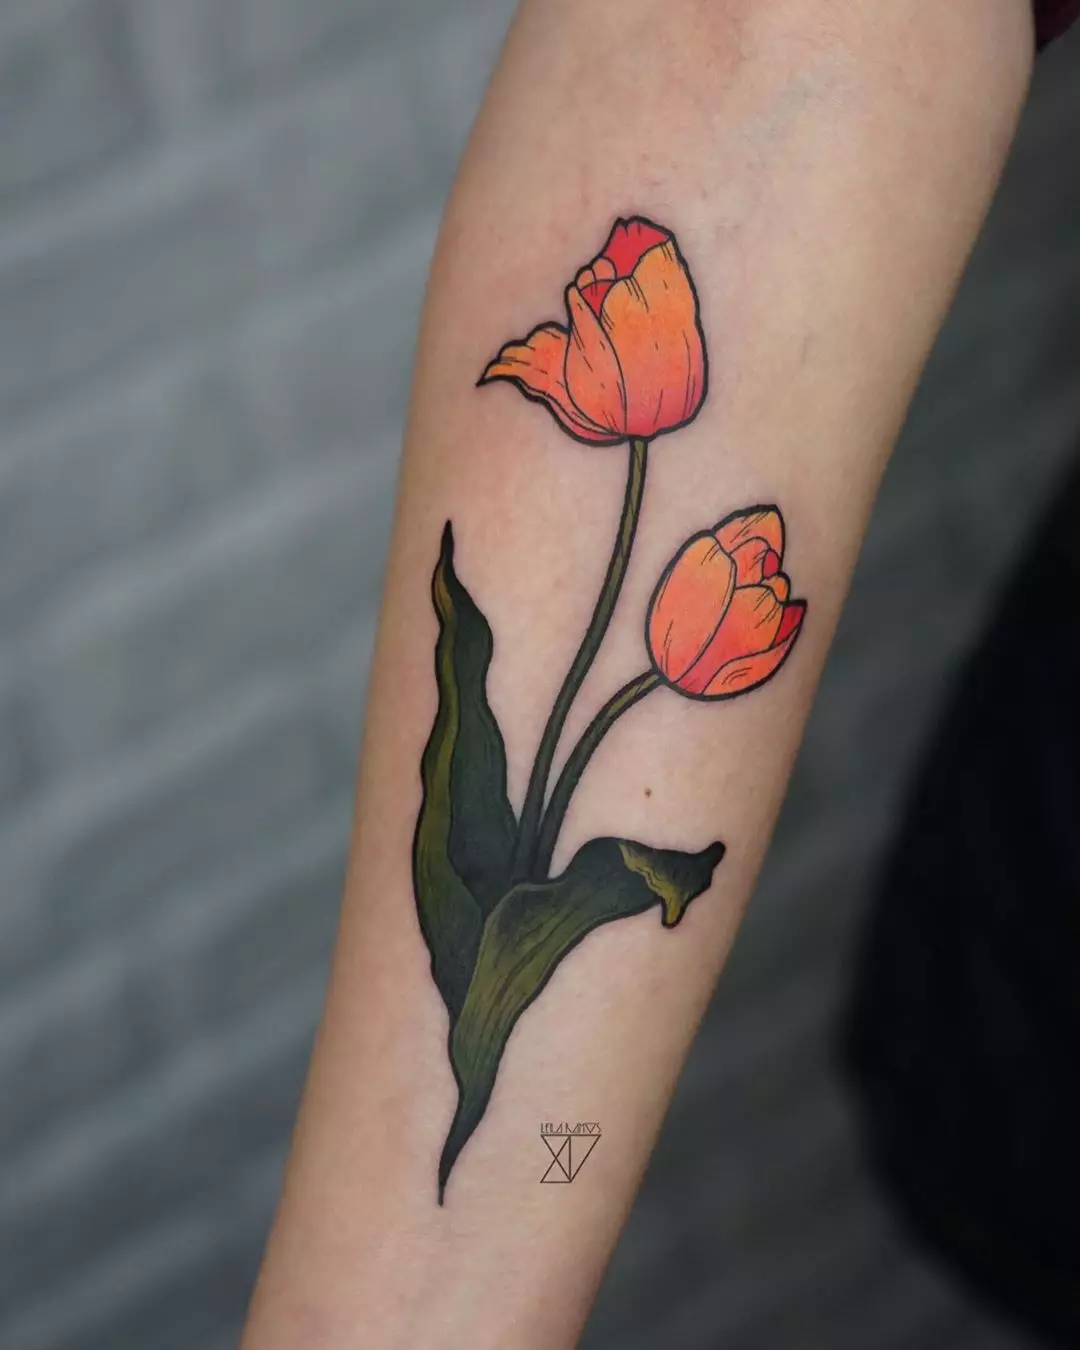 ស្នាមសាក់ជាមួយ tulips: តម្លៃនៃការចាក់សាក់សម្រាប់ក្មេងស្រីនិងសម្រាប់បុរសការបង្ហាញប្រភេទរូបភាព។ ការចាក់សាក់នៅលើដៃនៅលើកដៃនិងនៅតំបន់ផ្សេងទៀត tulip ខ្មៅនិងជម្រើសផ្សេងទៀត 14192_16